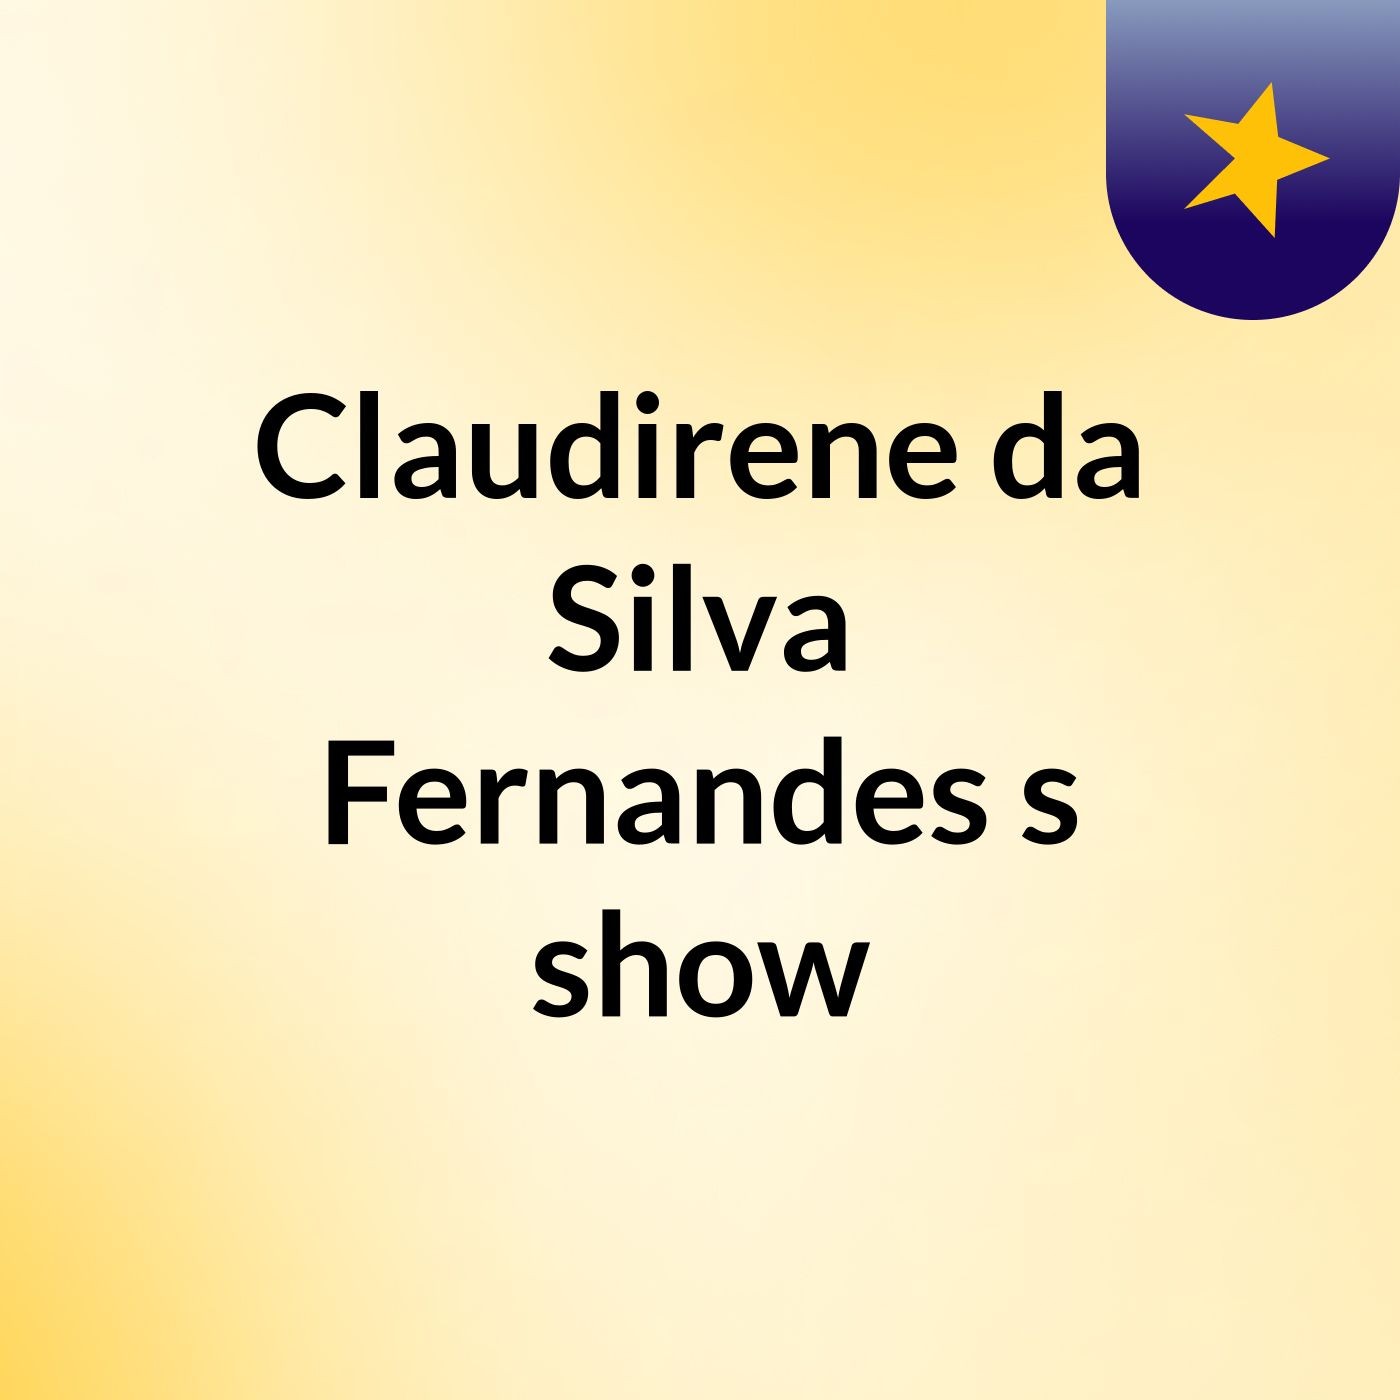 Claudirene da Silva Fernandes's show